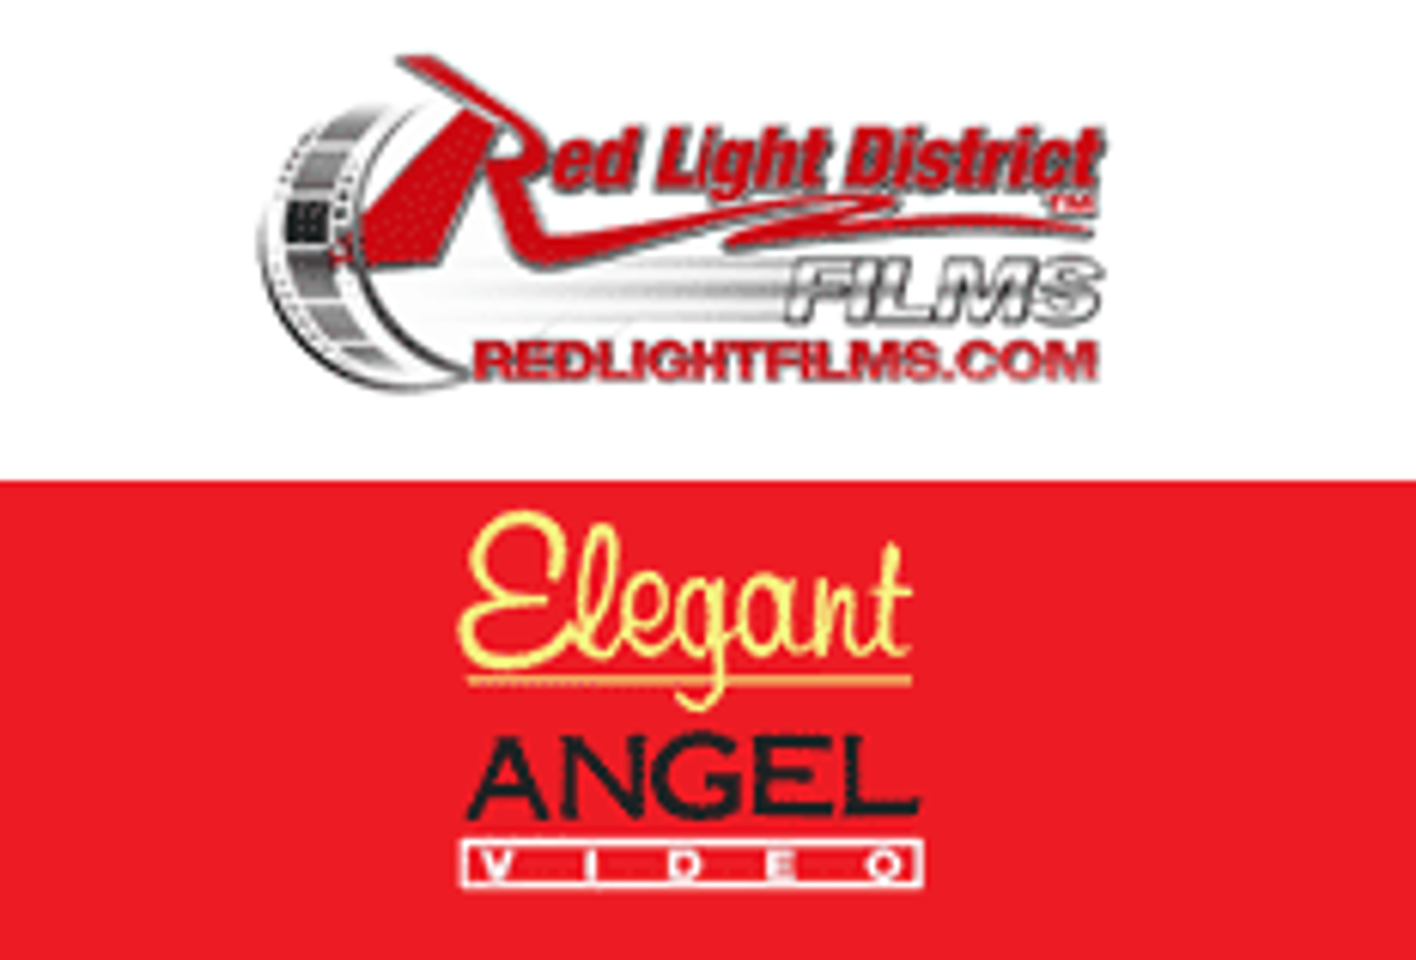 Red Light, Elegant Angel do Deal